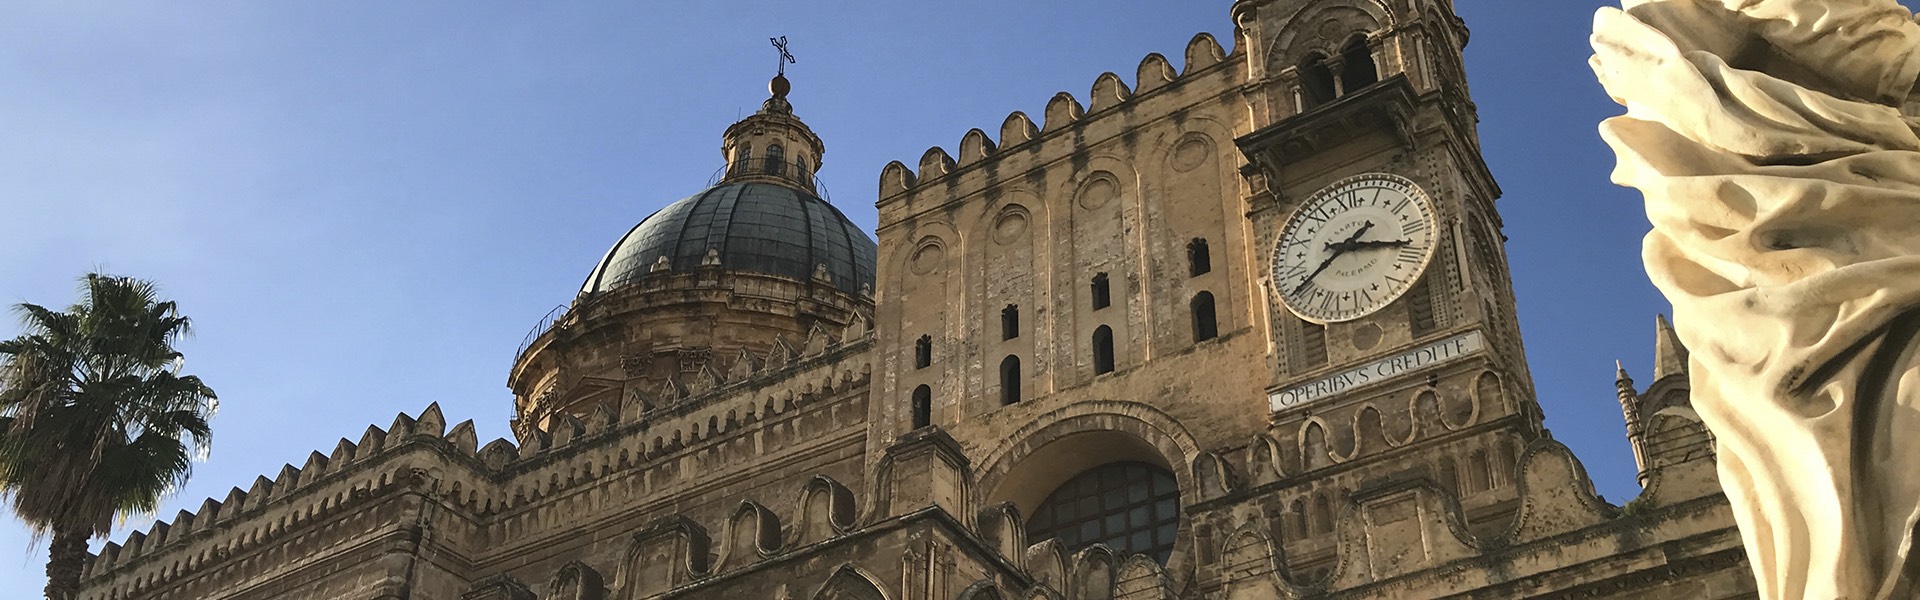 Palermo Arabo Normanna e le cattedrali di Cefalù e Monreale 2